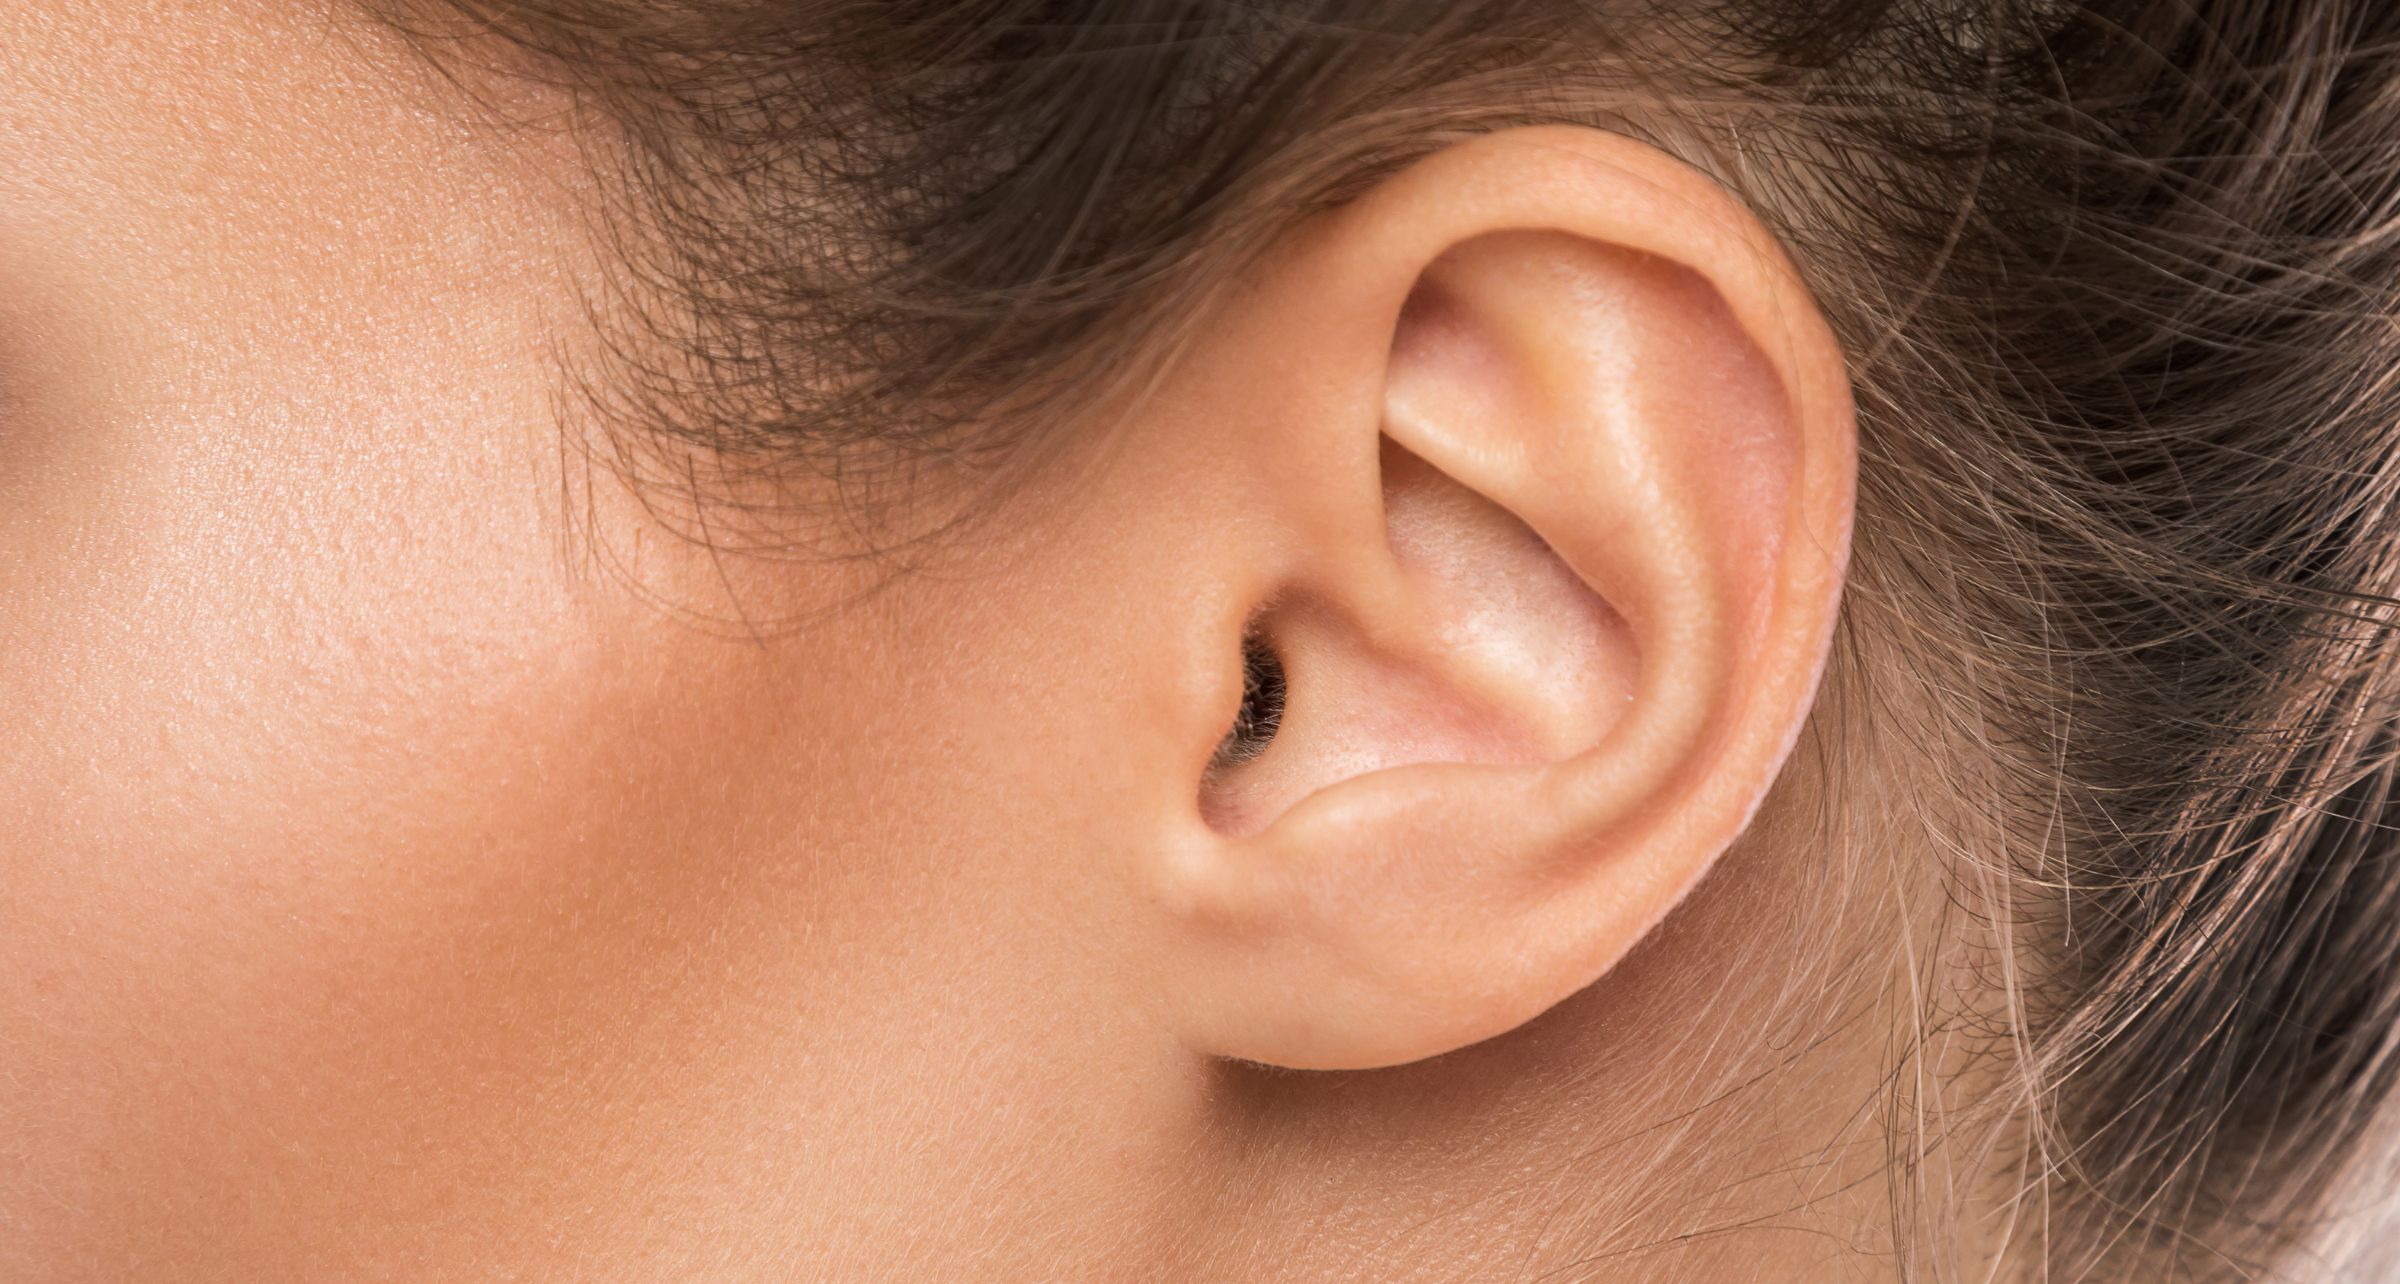 Pulizia orecchie: i consigli dell’OMS